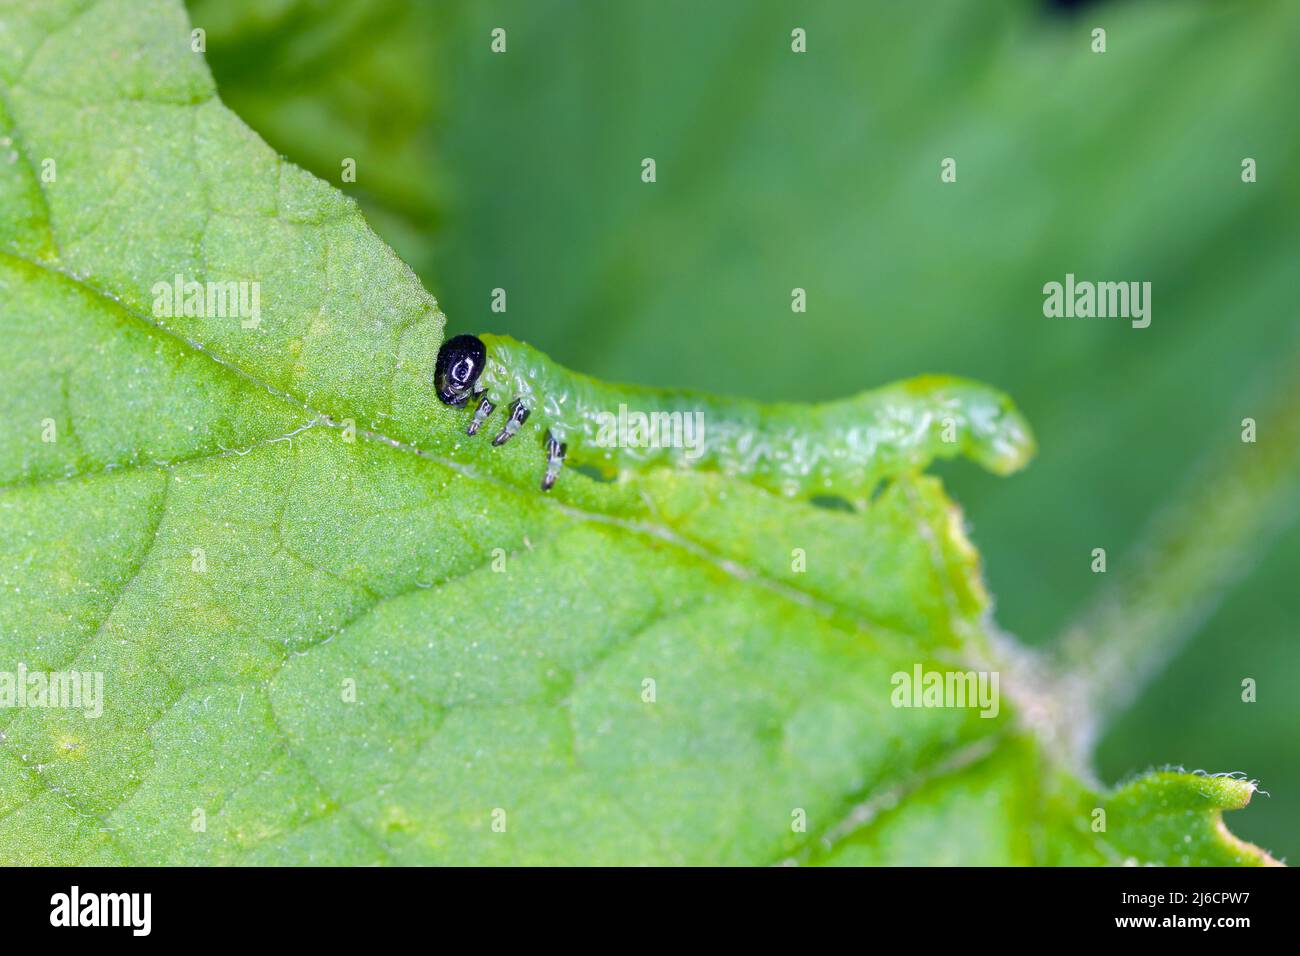 Kleine Stachelbeere-Säge Pristiphora rufipes - Blatt der Johannisbeere, die von den Larven frisst. Die Johannisbeersawfly ist ein Schädling von Johannisbeeren und Stachelbeeren. Stockfoto